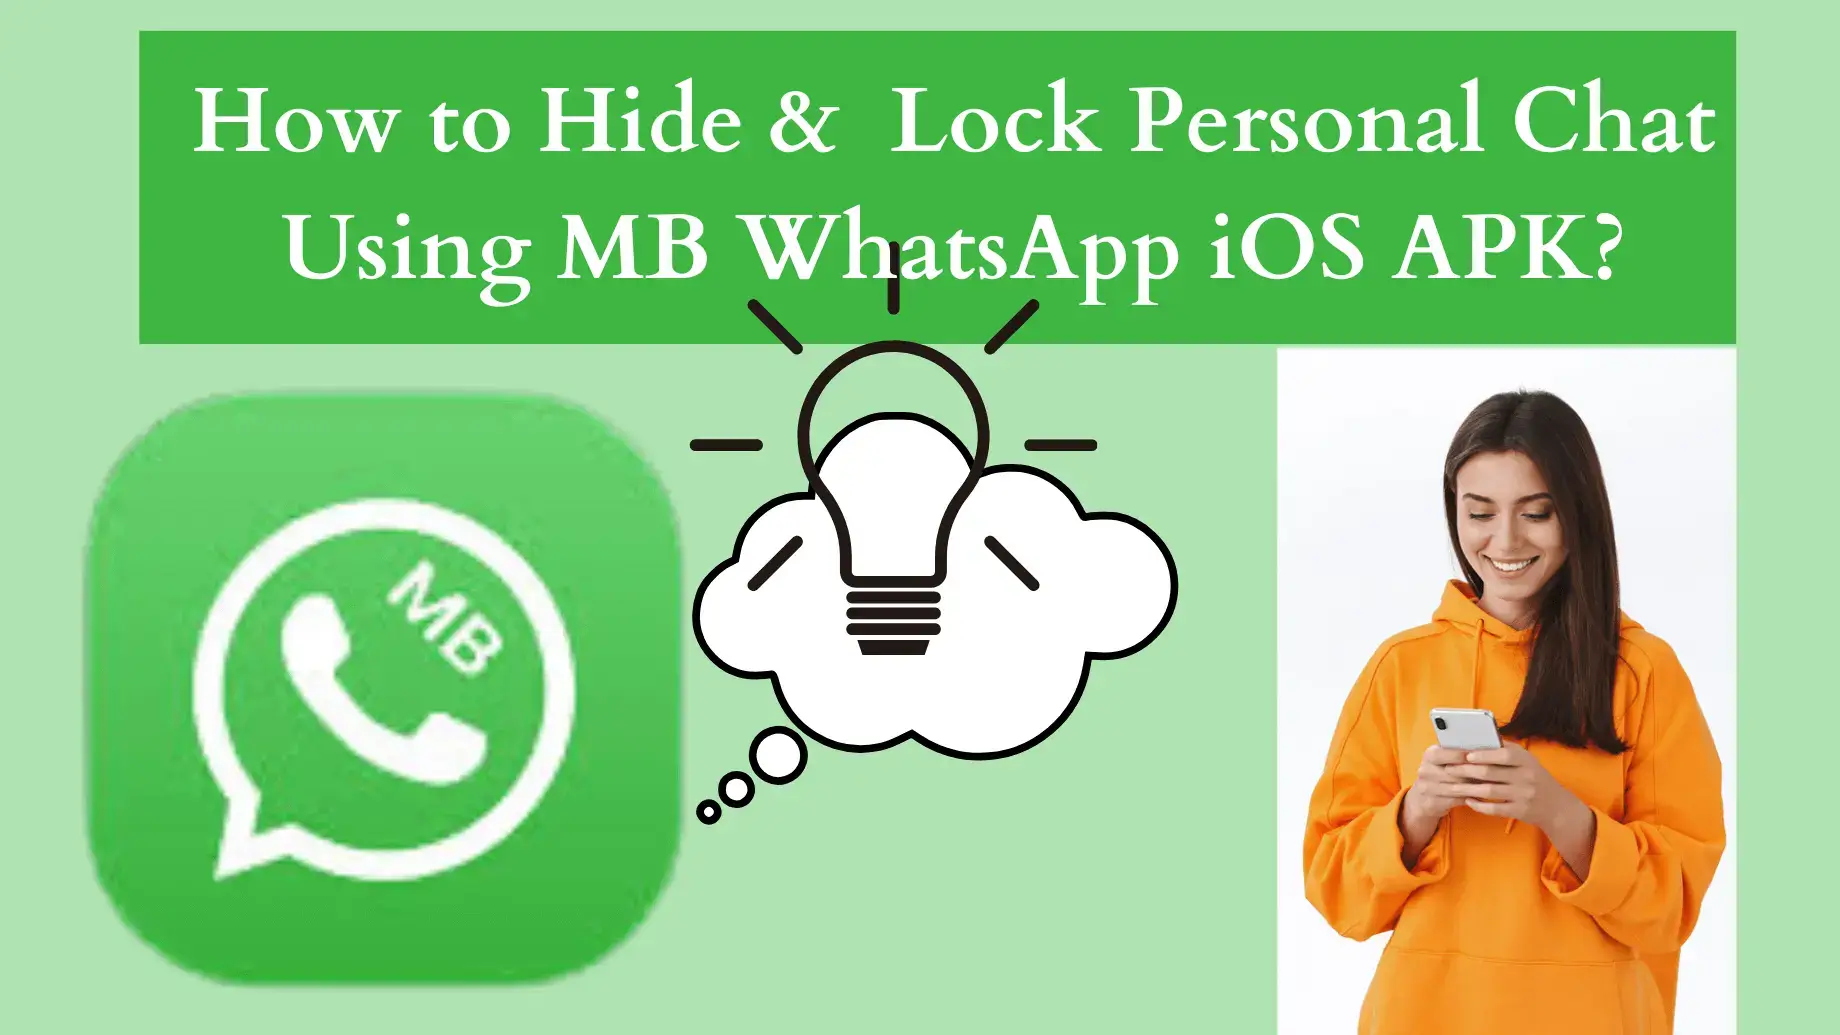 MB WhatsApp iOS APK